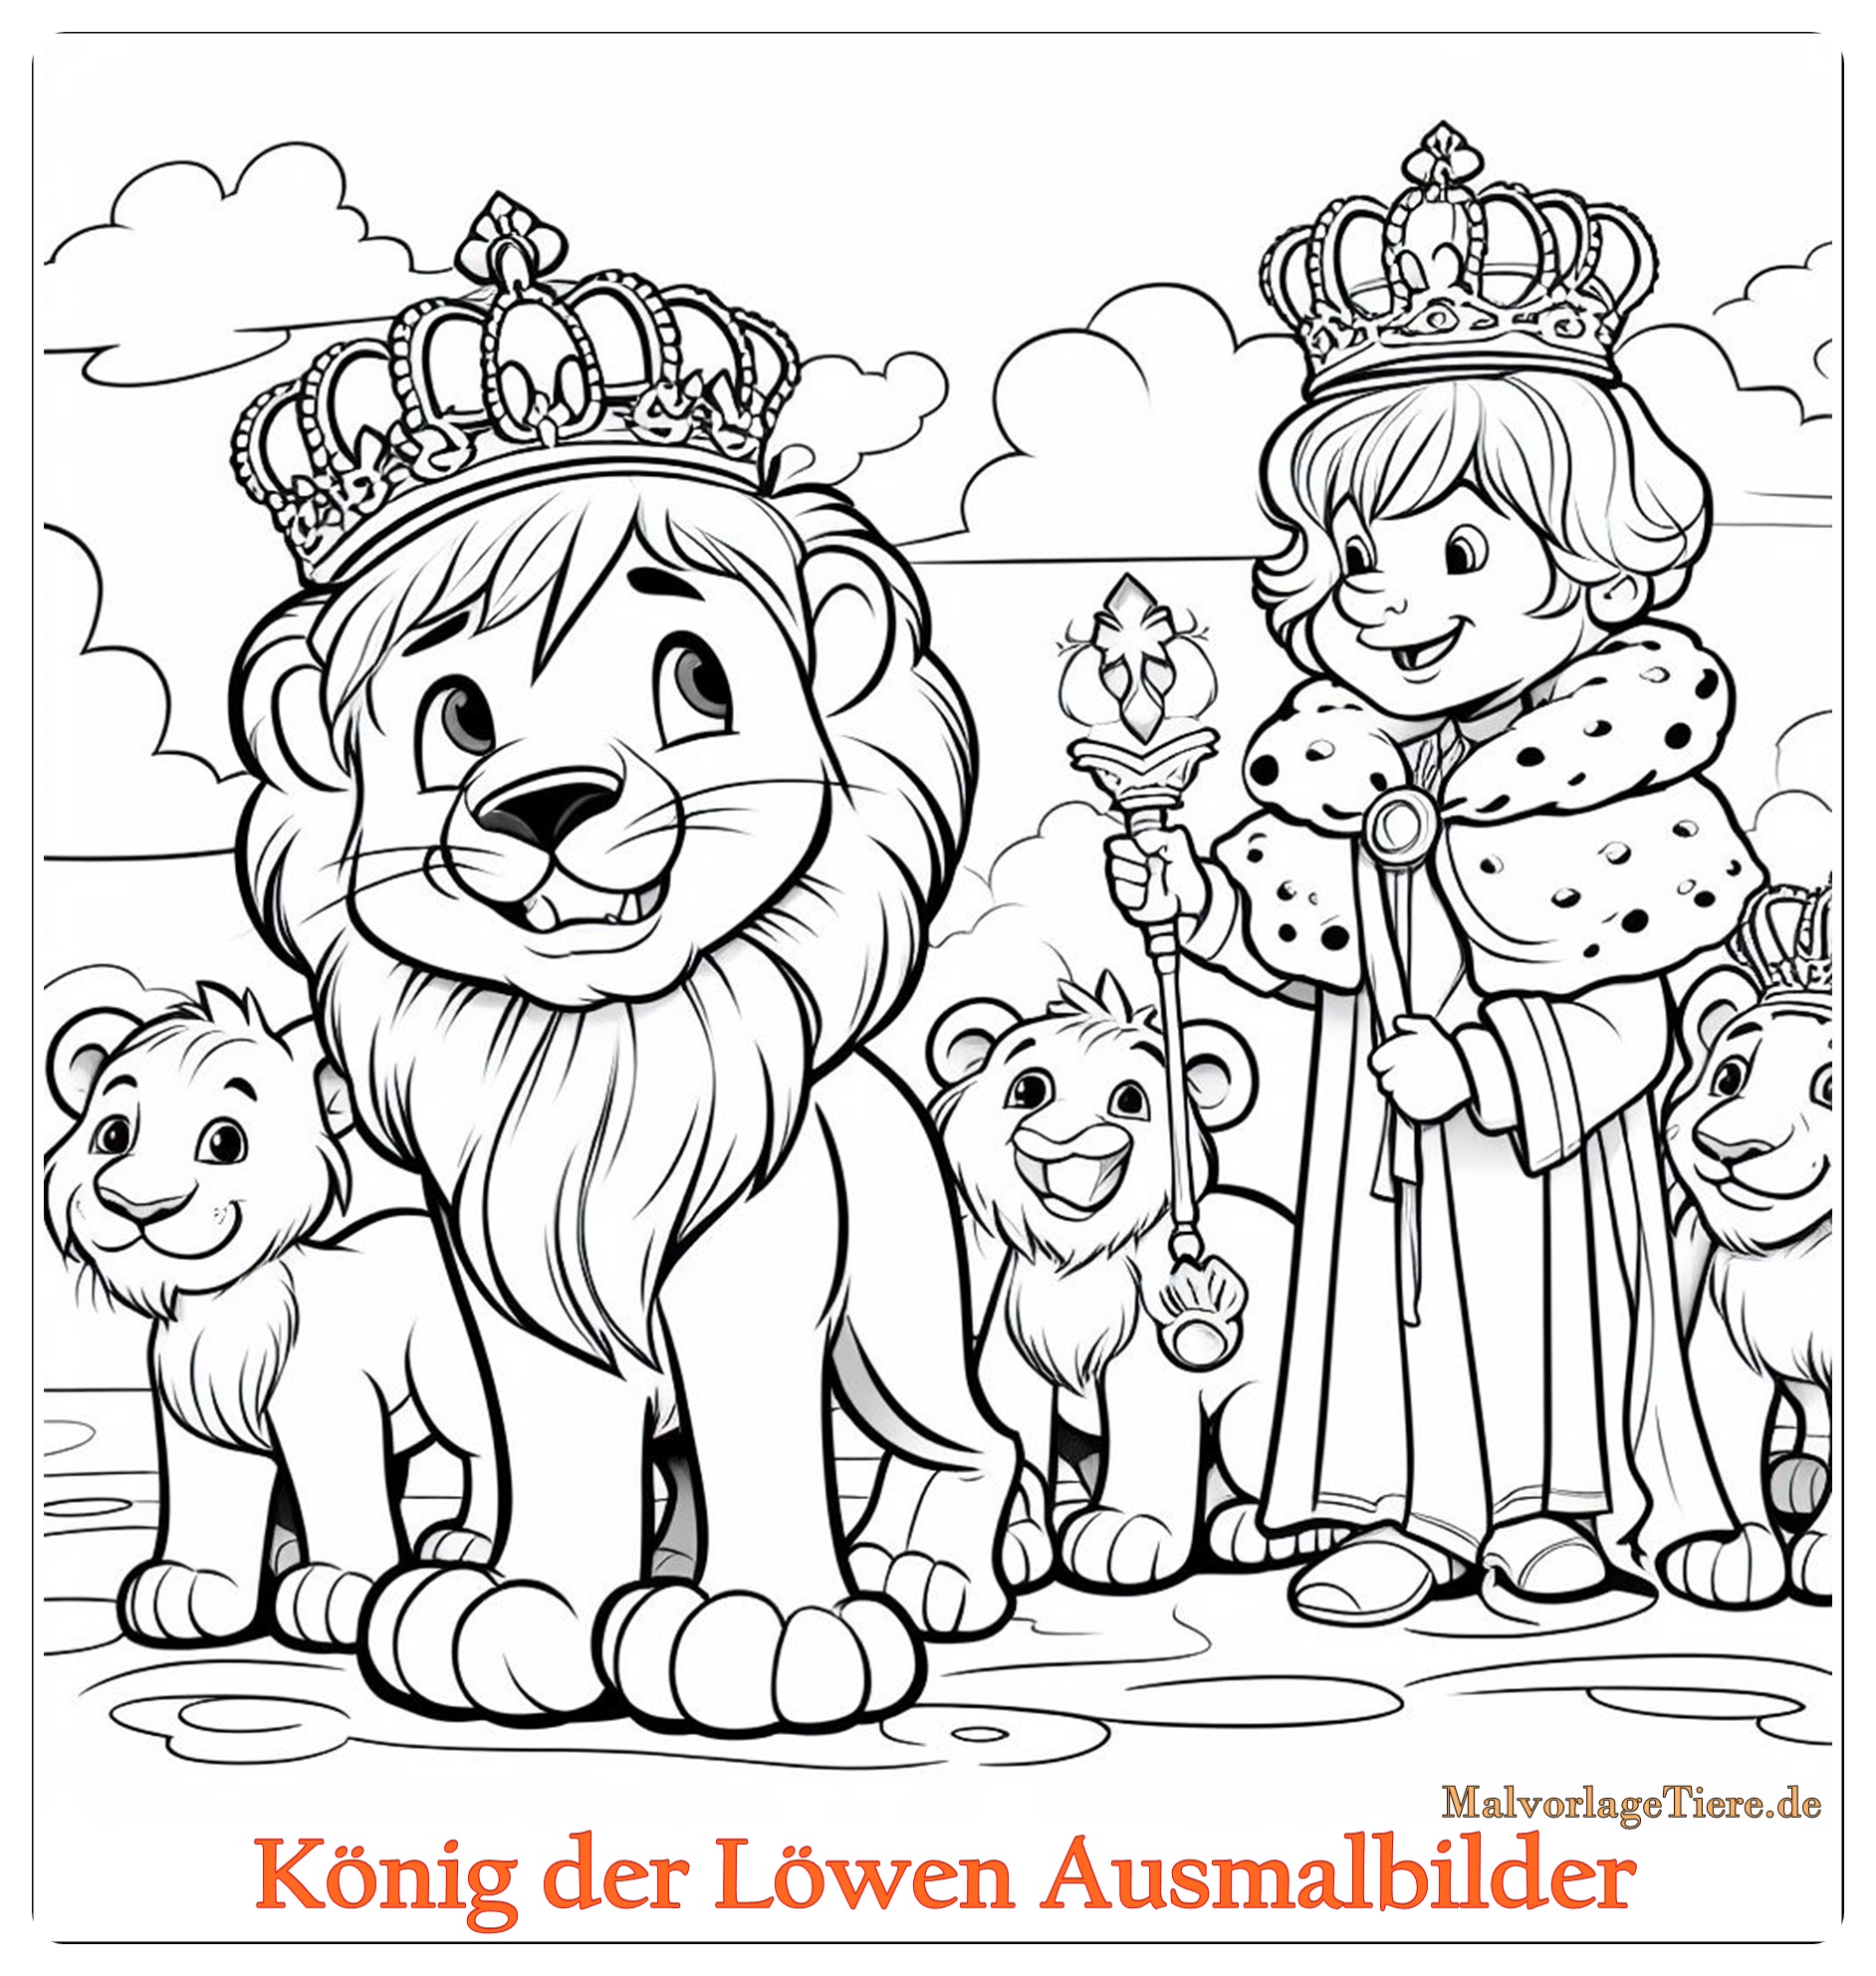 König der Löwen Ausmalbilder 03 by stadiongucker.de